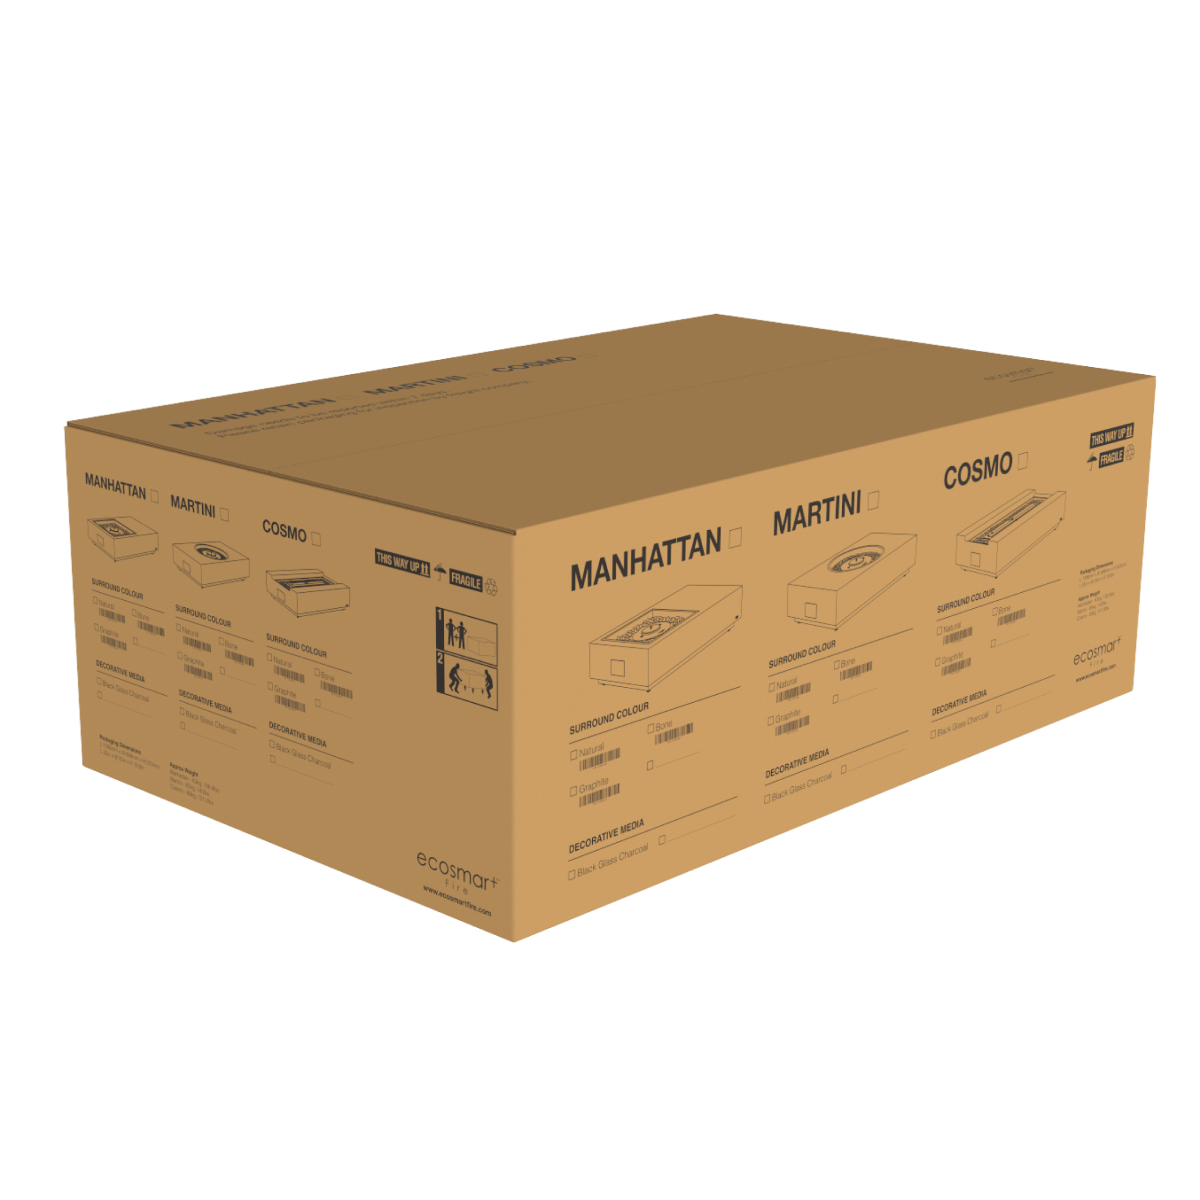 Verpakking EcoSmart Fire - Manhattan 50 vuurtafel in de doos